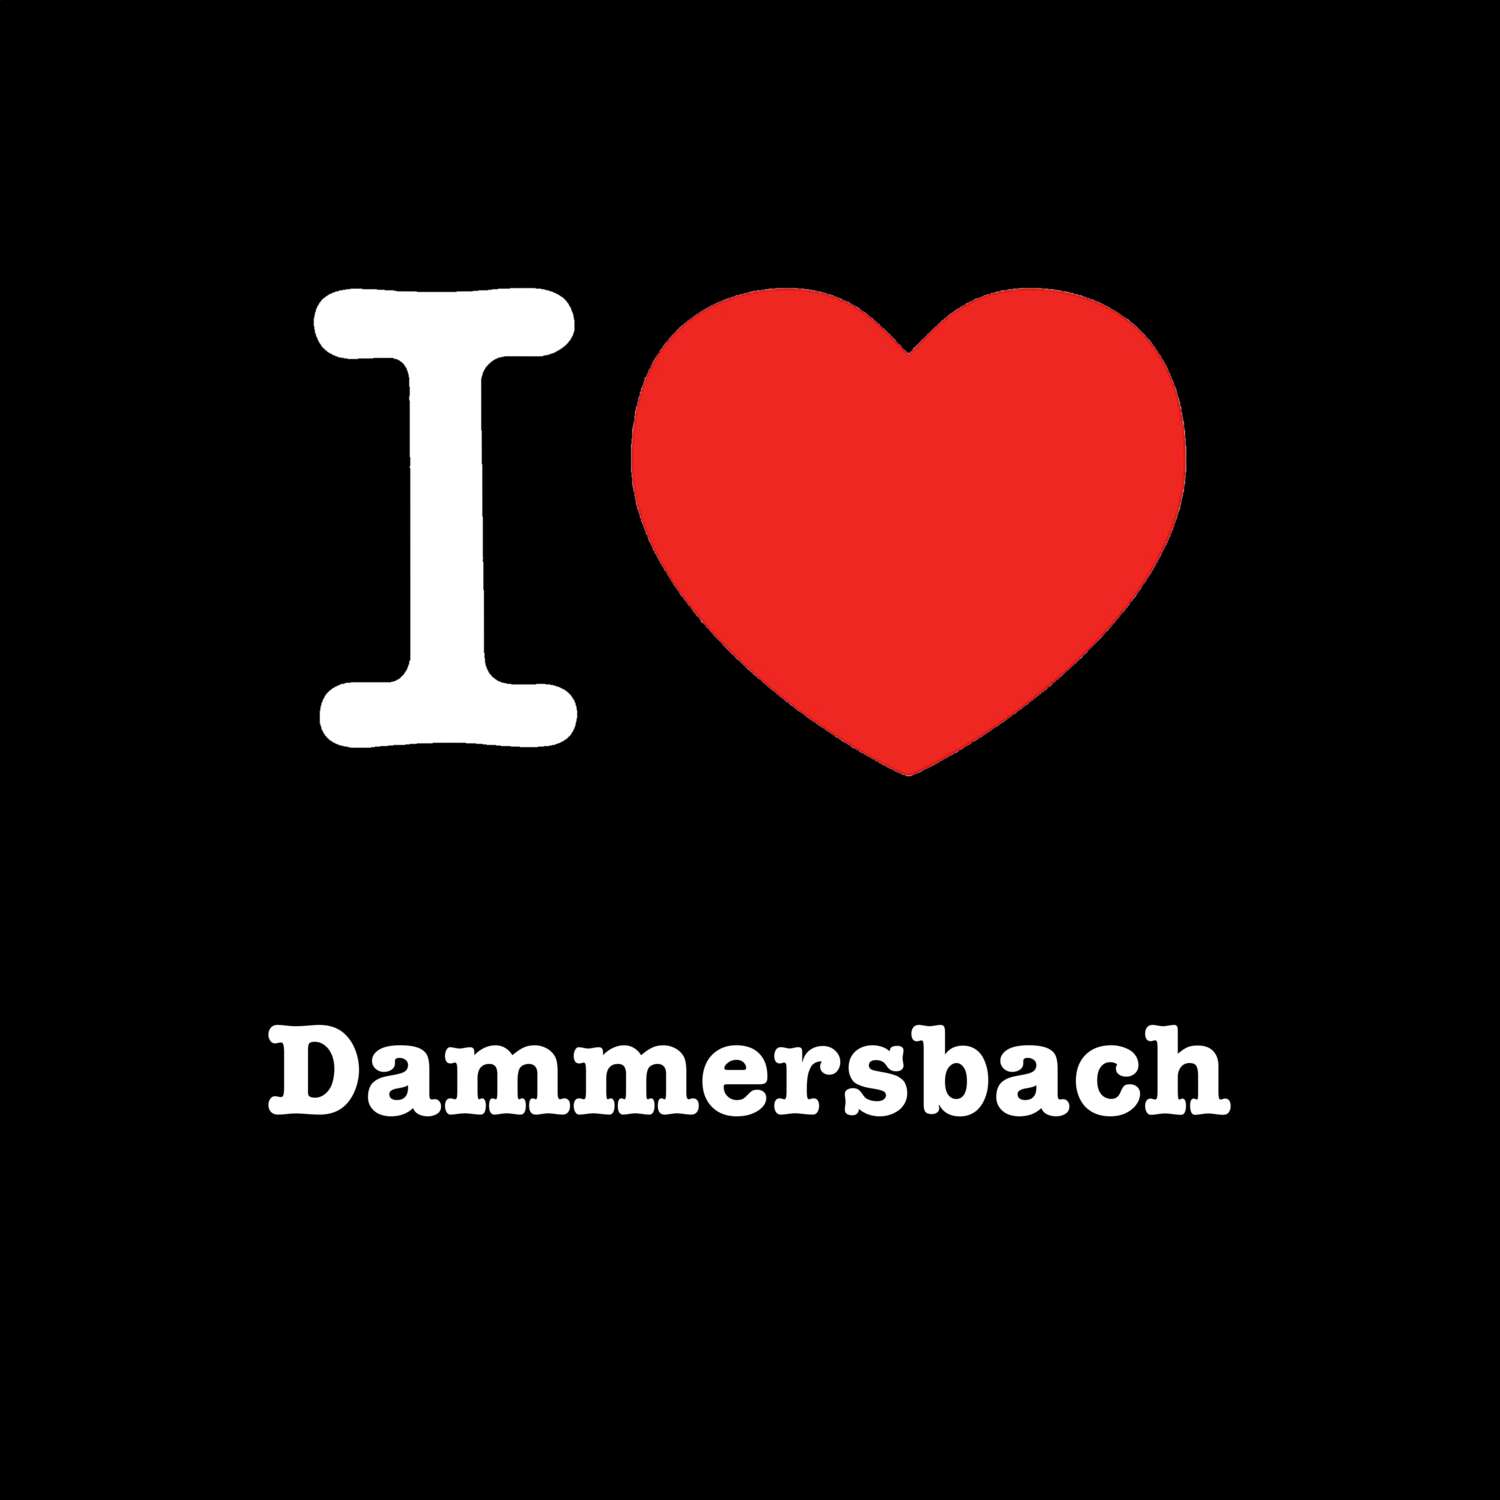 Dammersbach T-Shirt »I love«